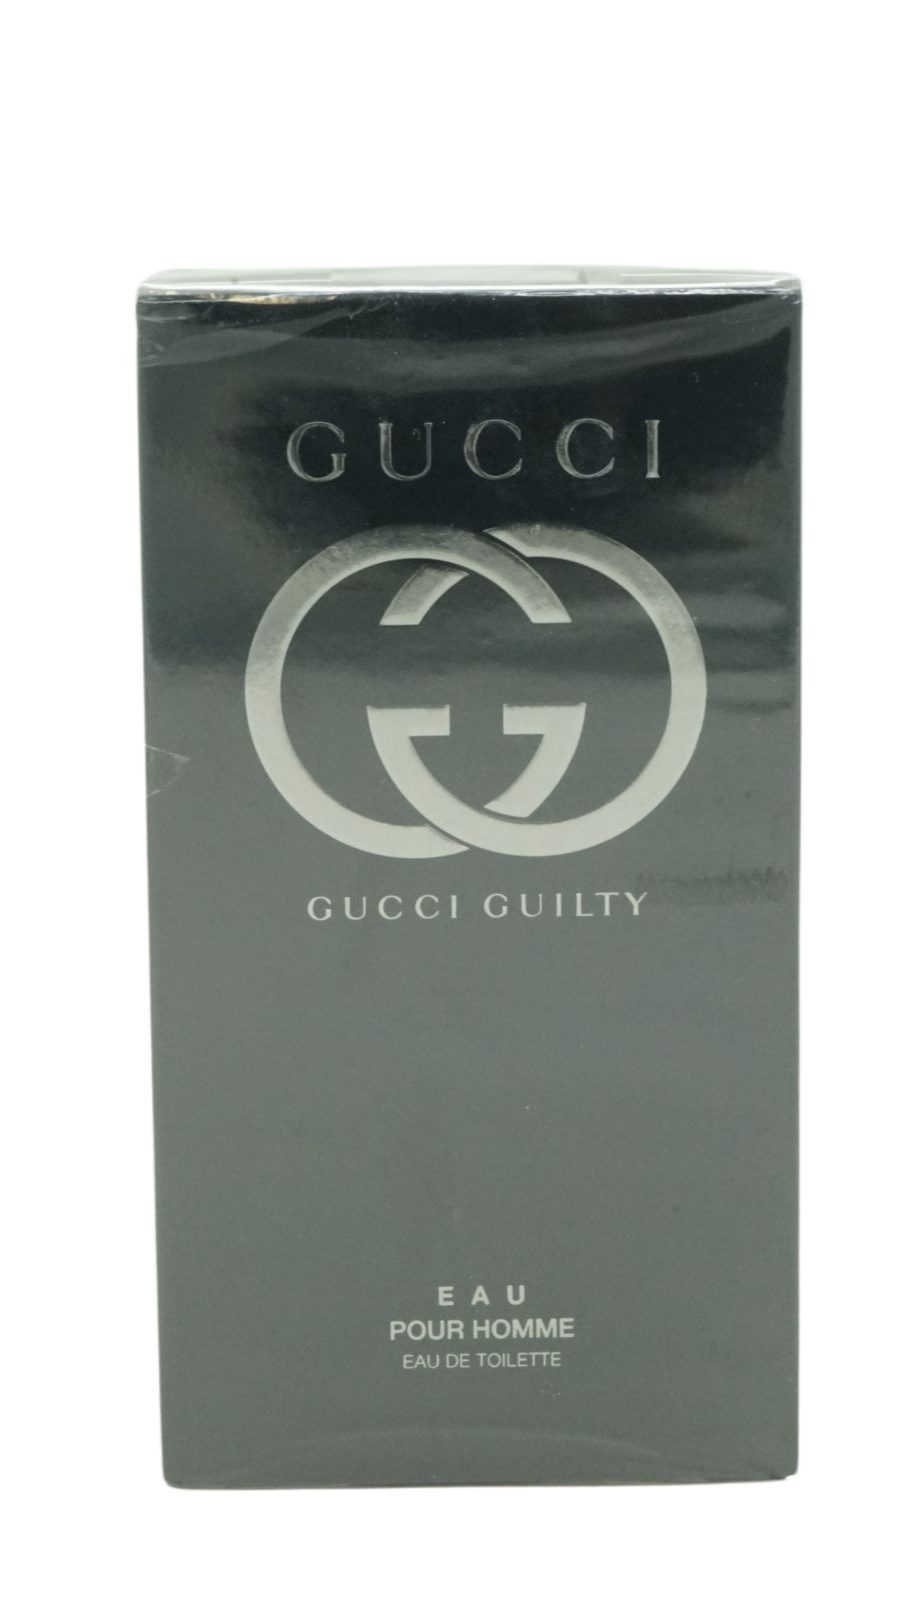 GUCCI Eau de Toilette Gucci Guilty pour homme Eau de Toilette 90ml